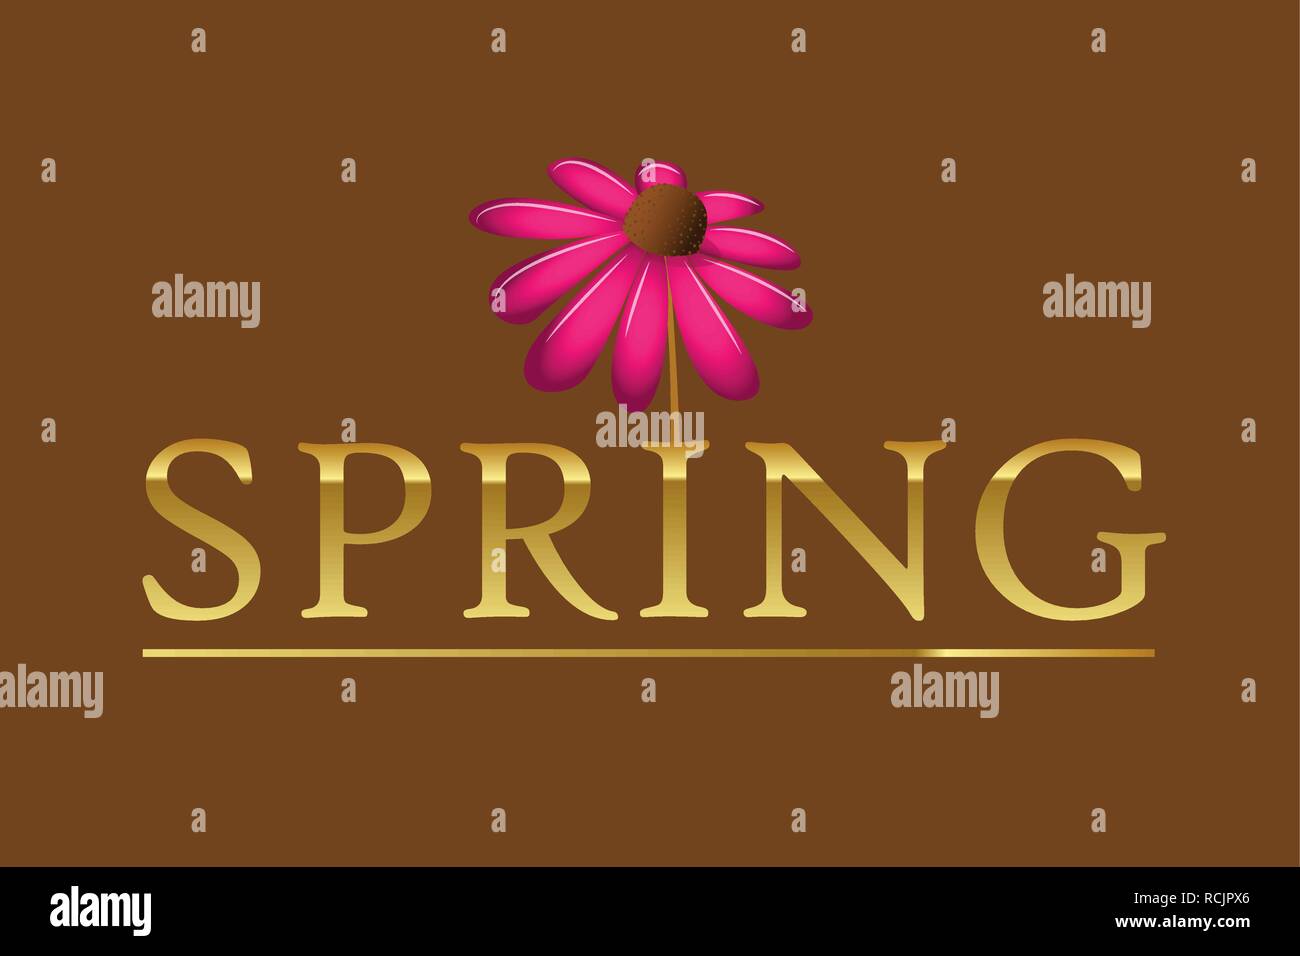 Golden Spring Typografie mit rosa blühende Blume Blütenblatt auf braunem Grund Vektor EPS Abbildung 10 Stock Vektor